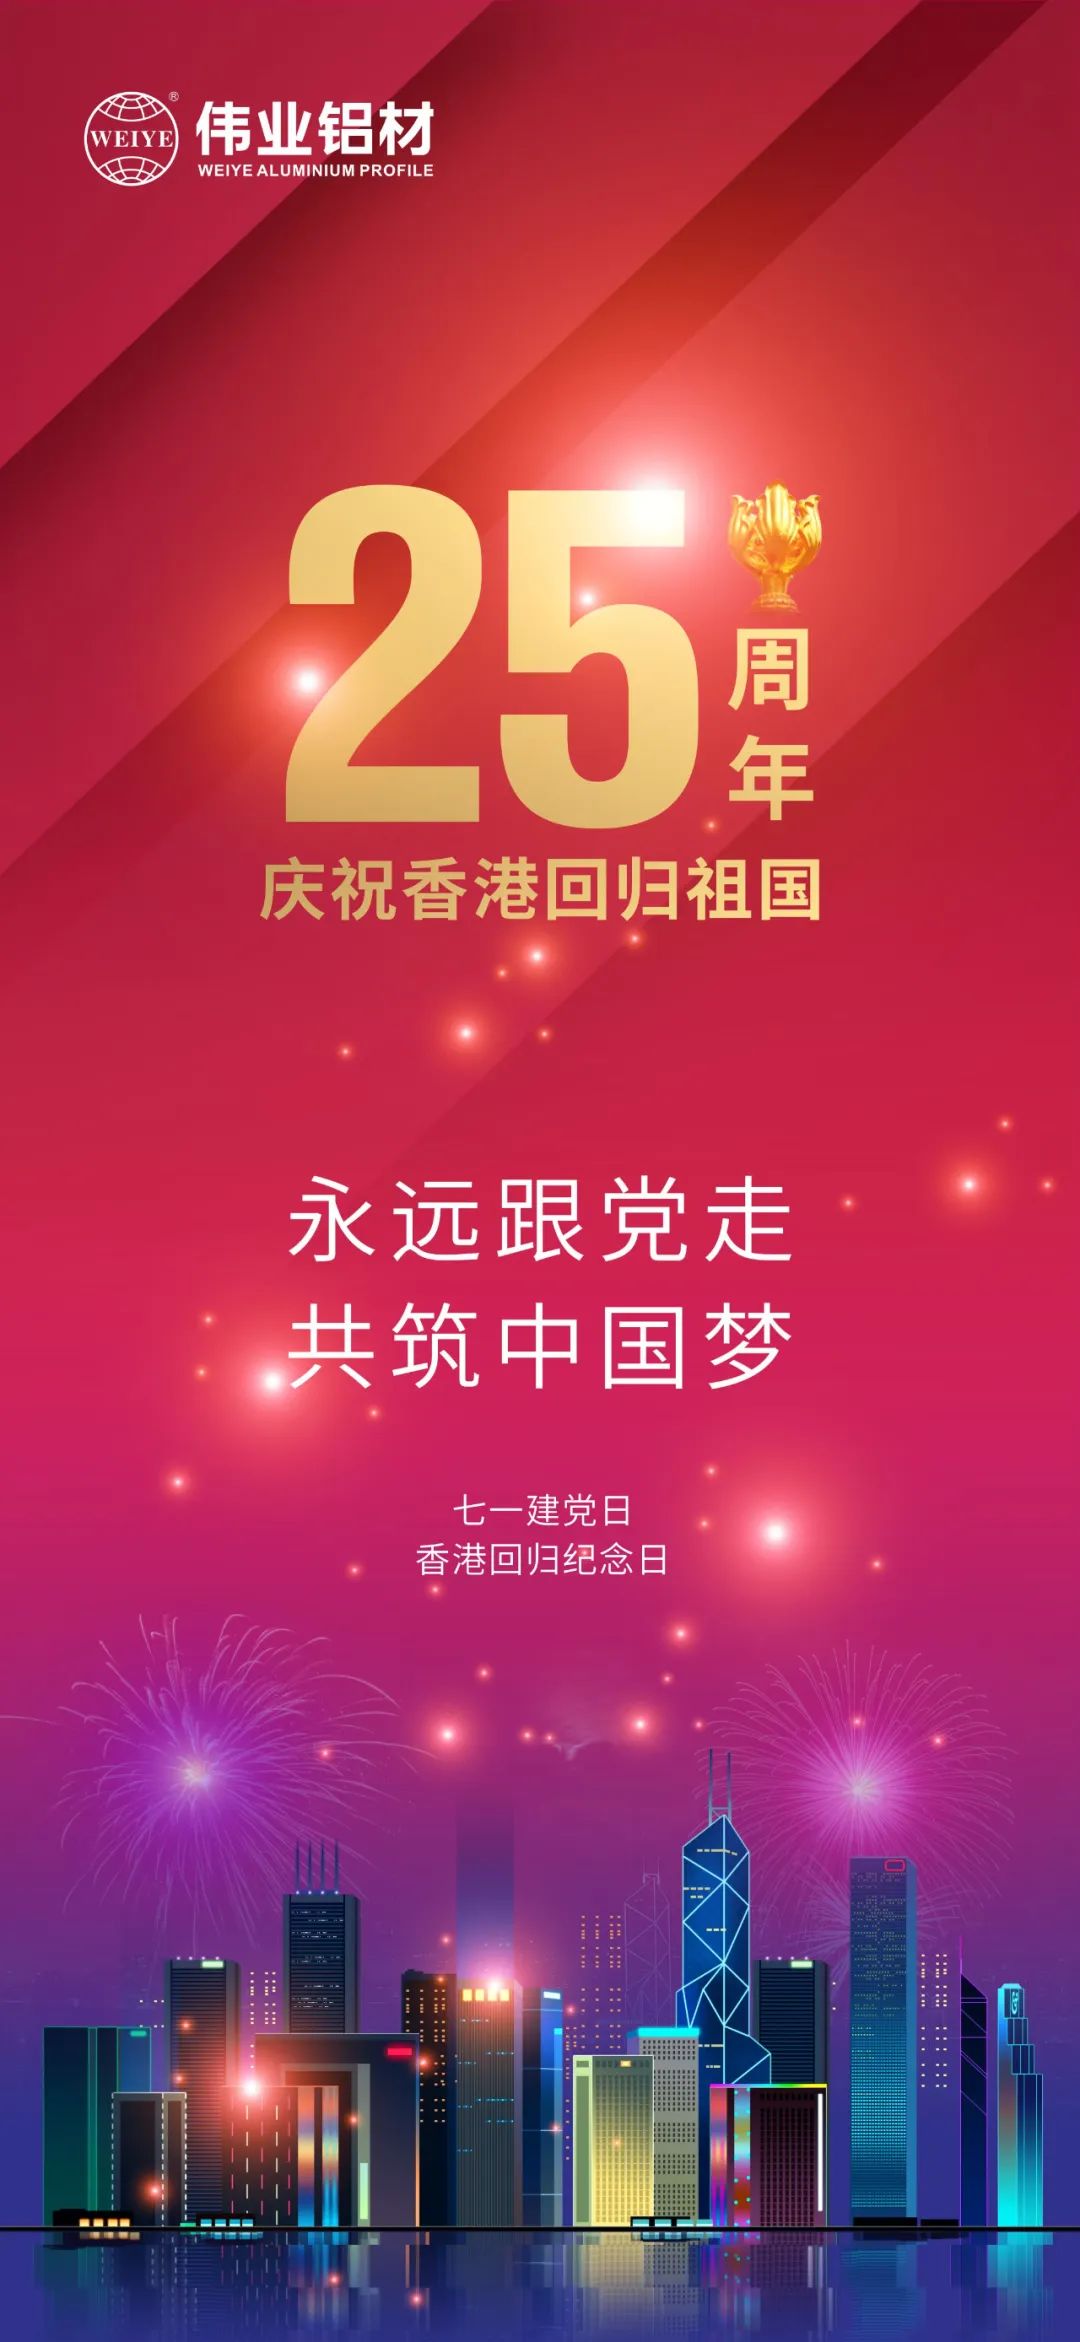 永远跟党走 共筑中国梦 热烈庆祝中国共产党成立101周年 香港特别行政区回归25周年